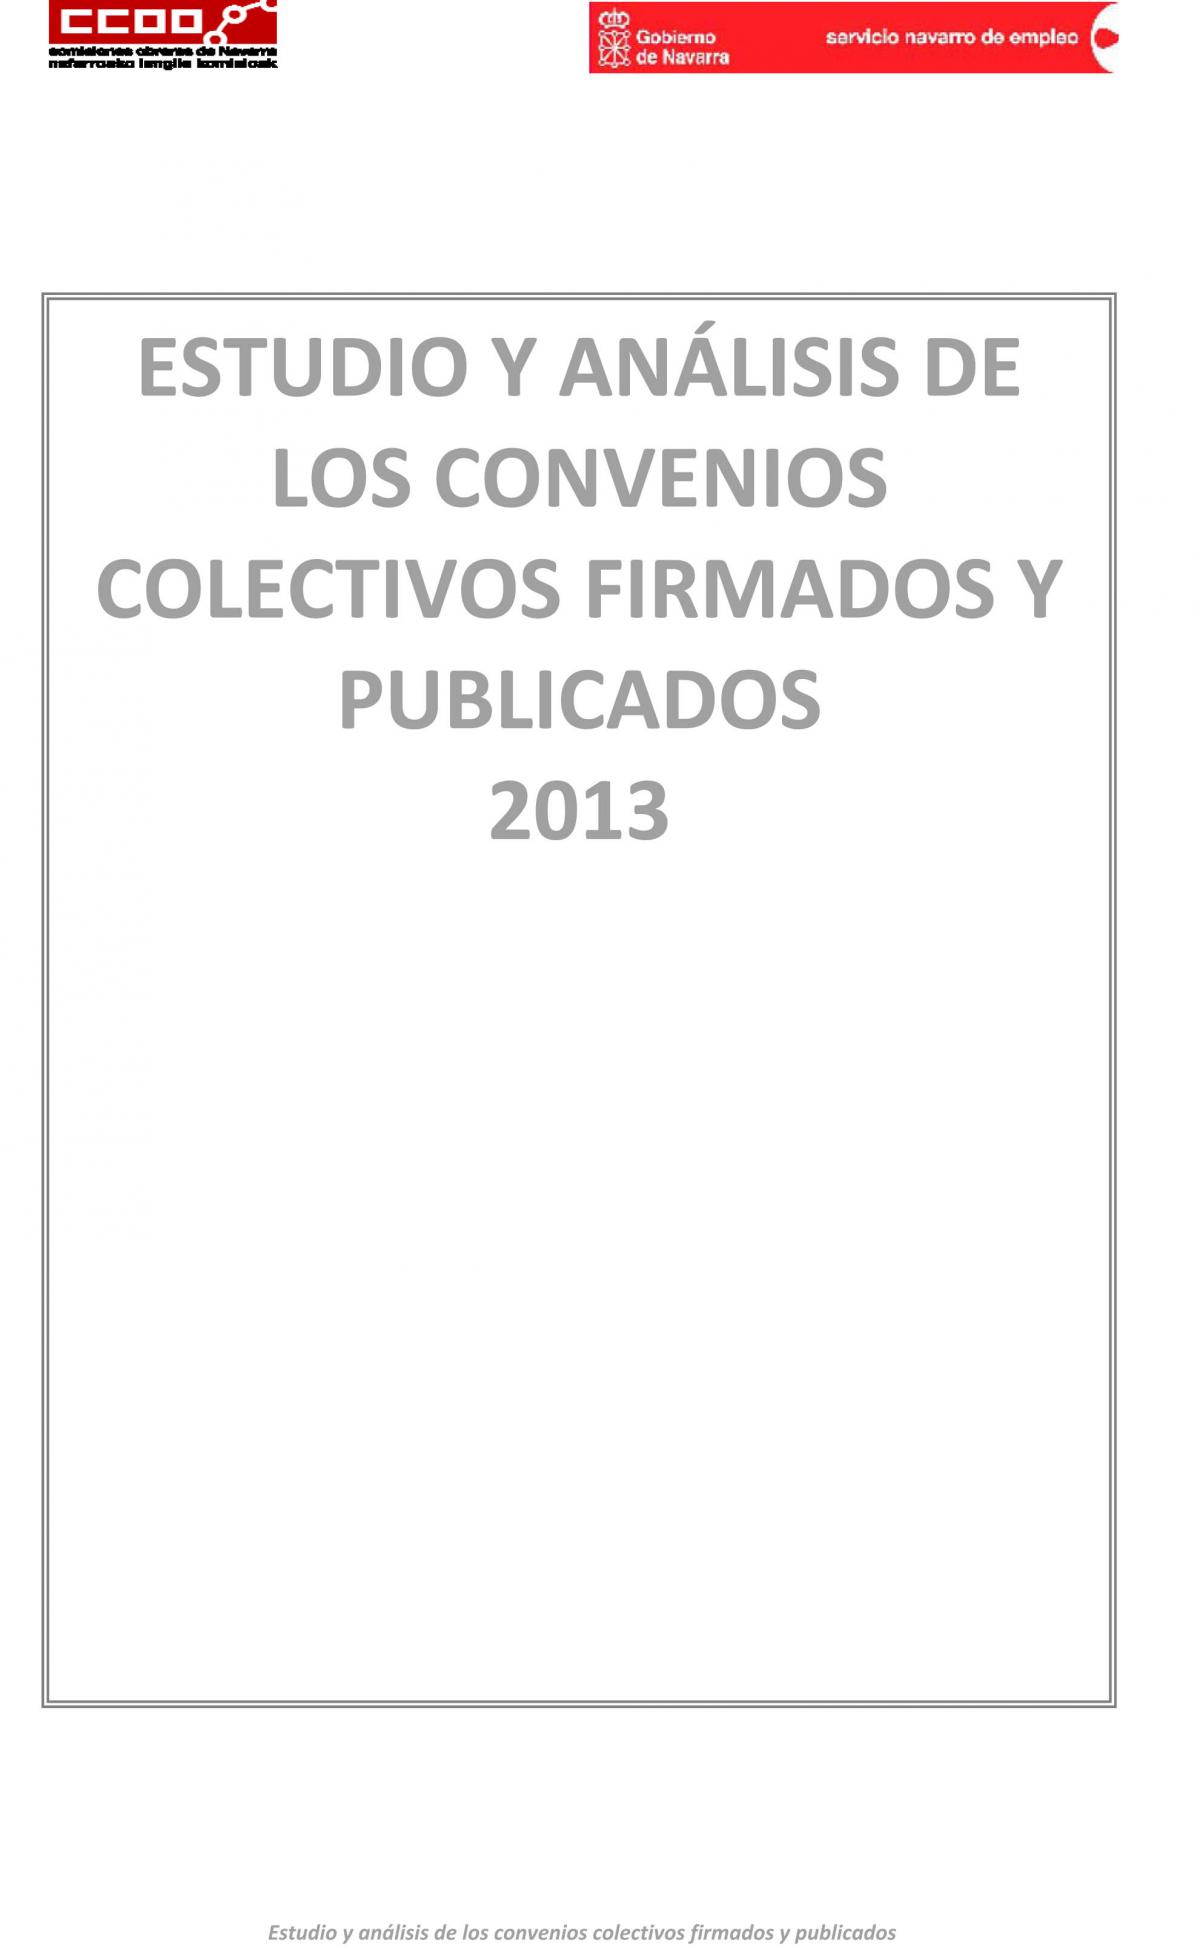 Estudio y anlisis de los convenios colectivos firmados y publicados en 2013